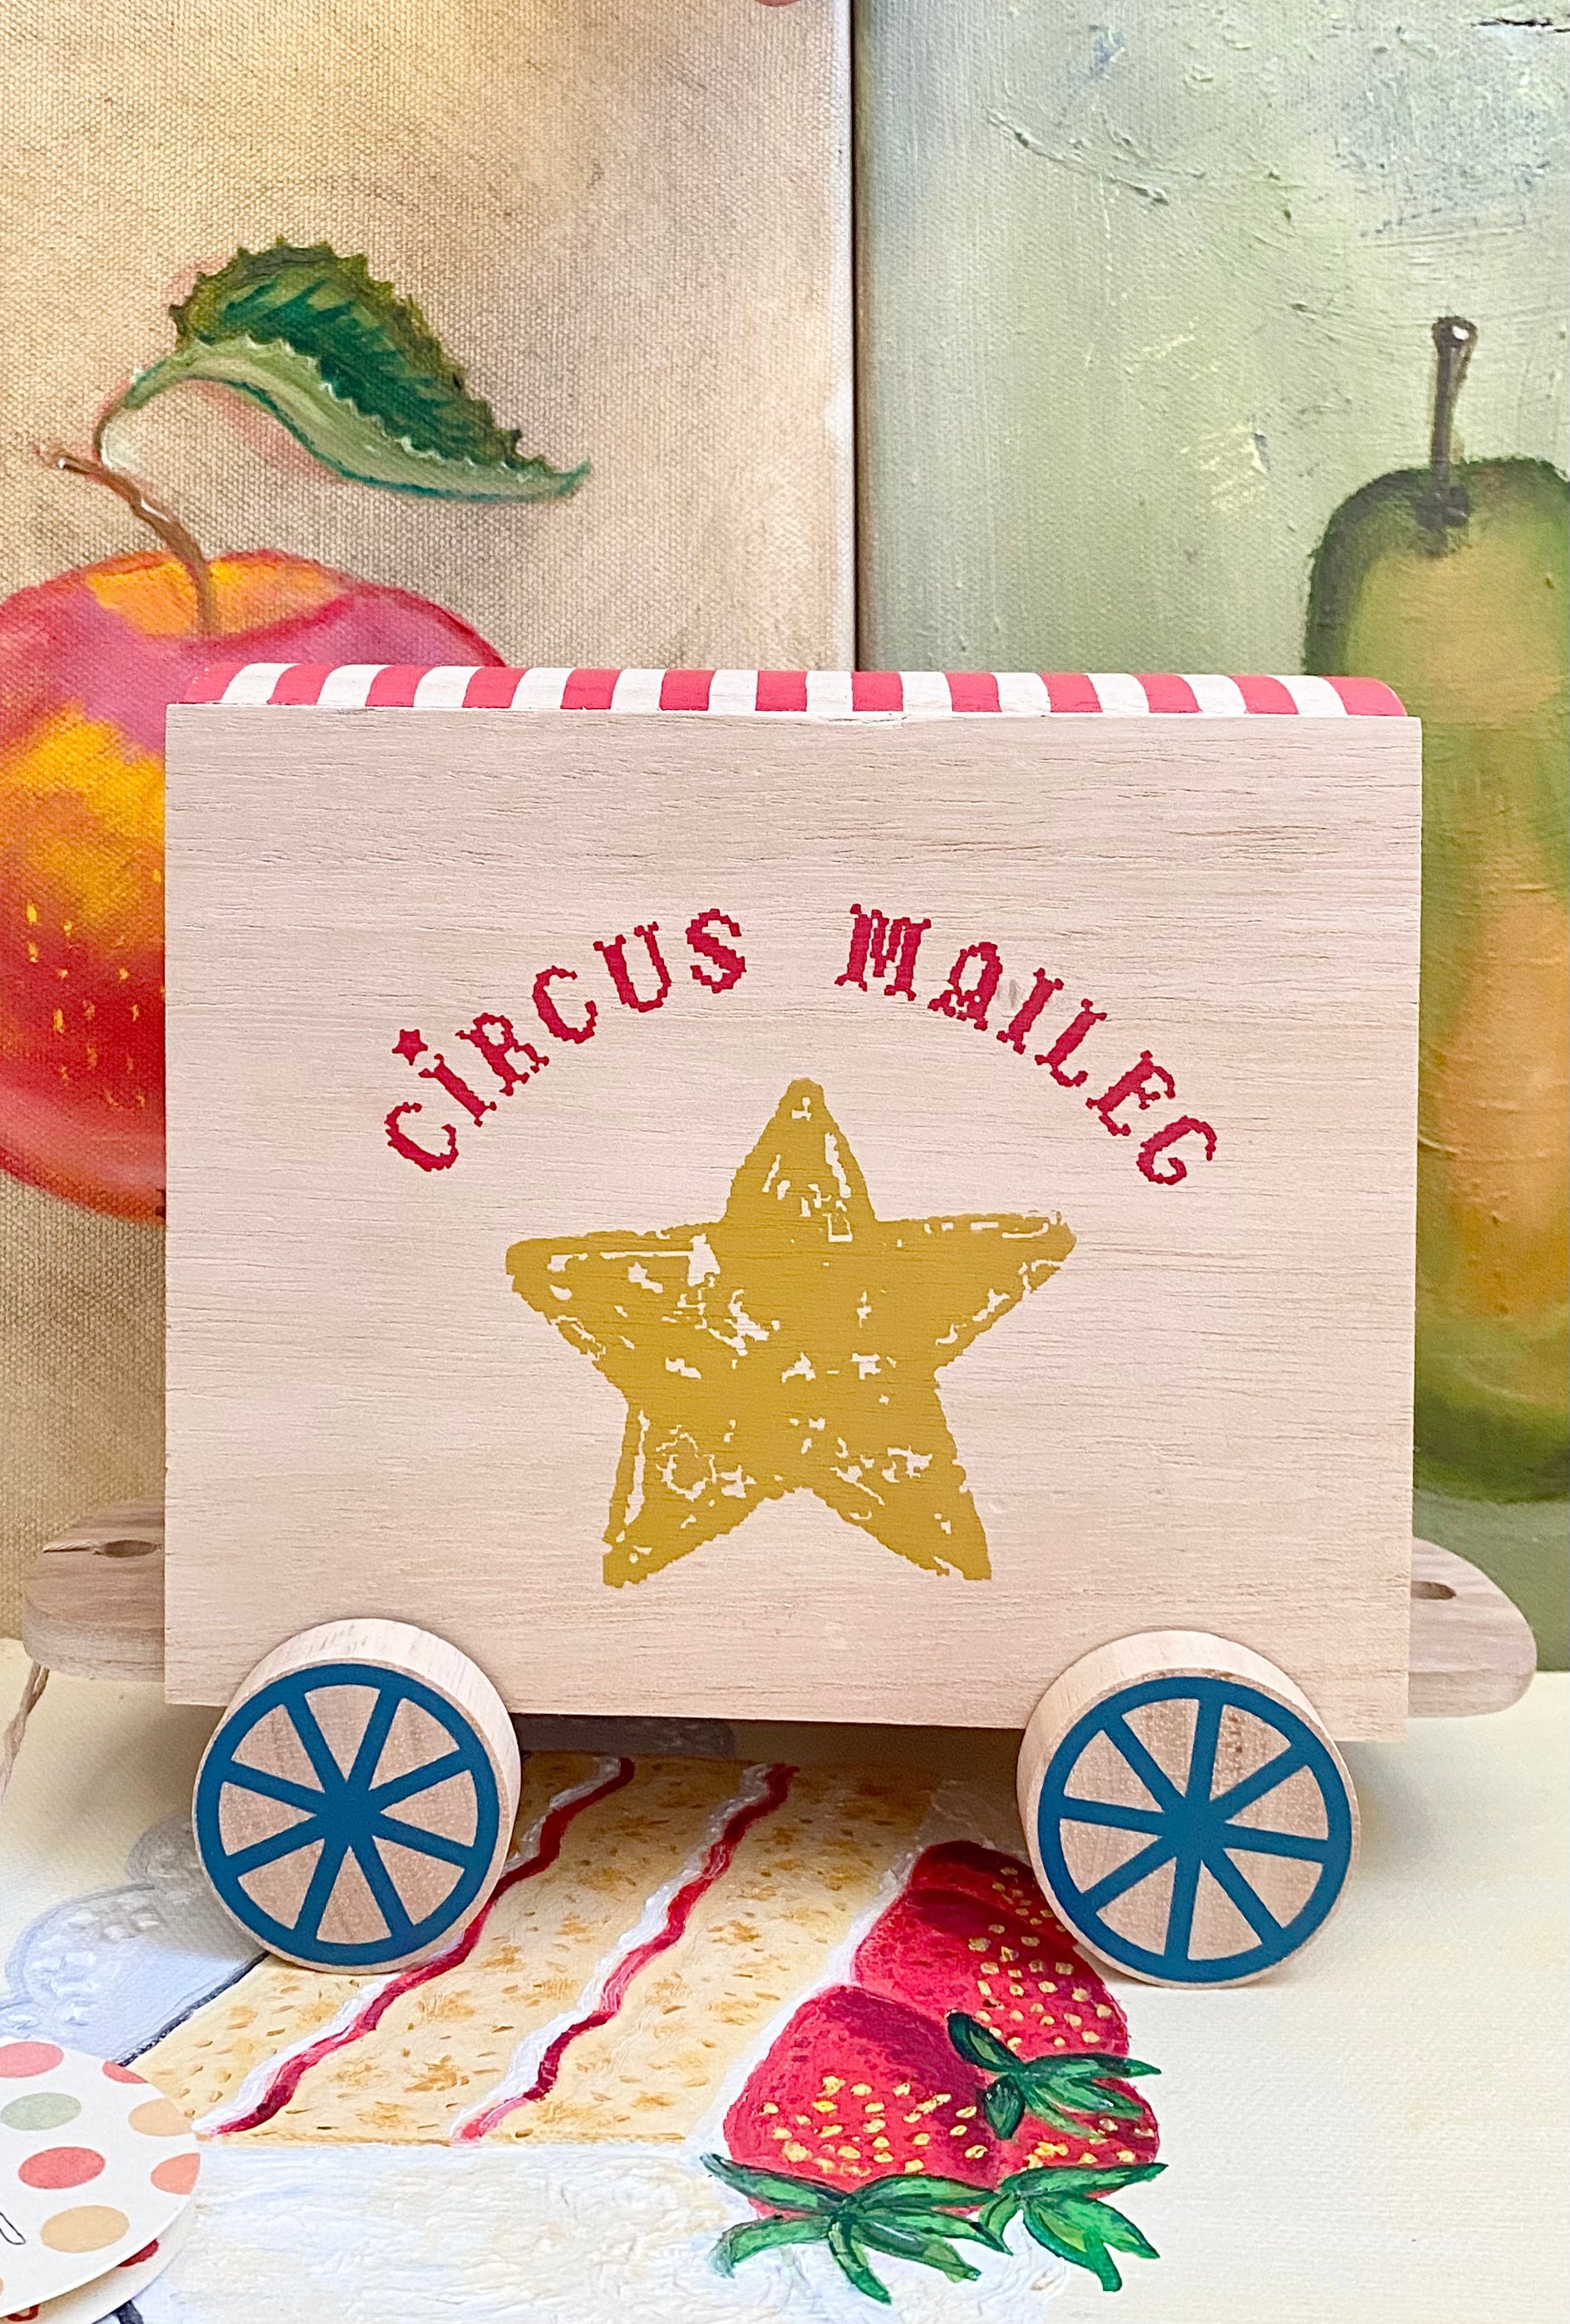 Circus Wagon - 2014